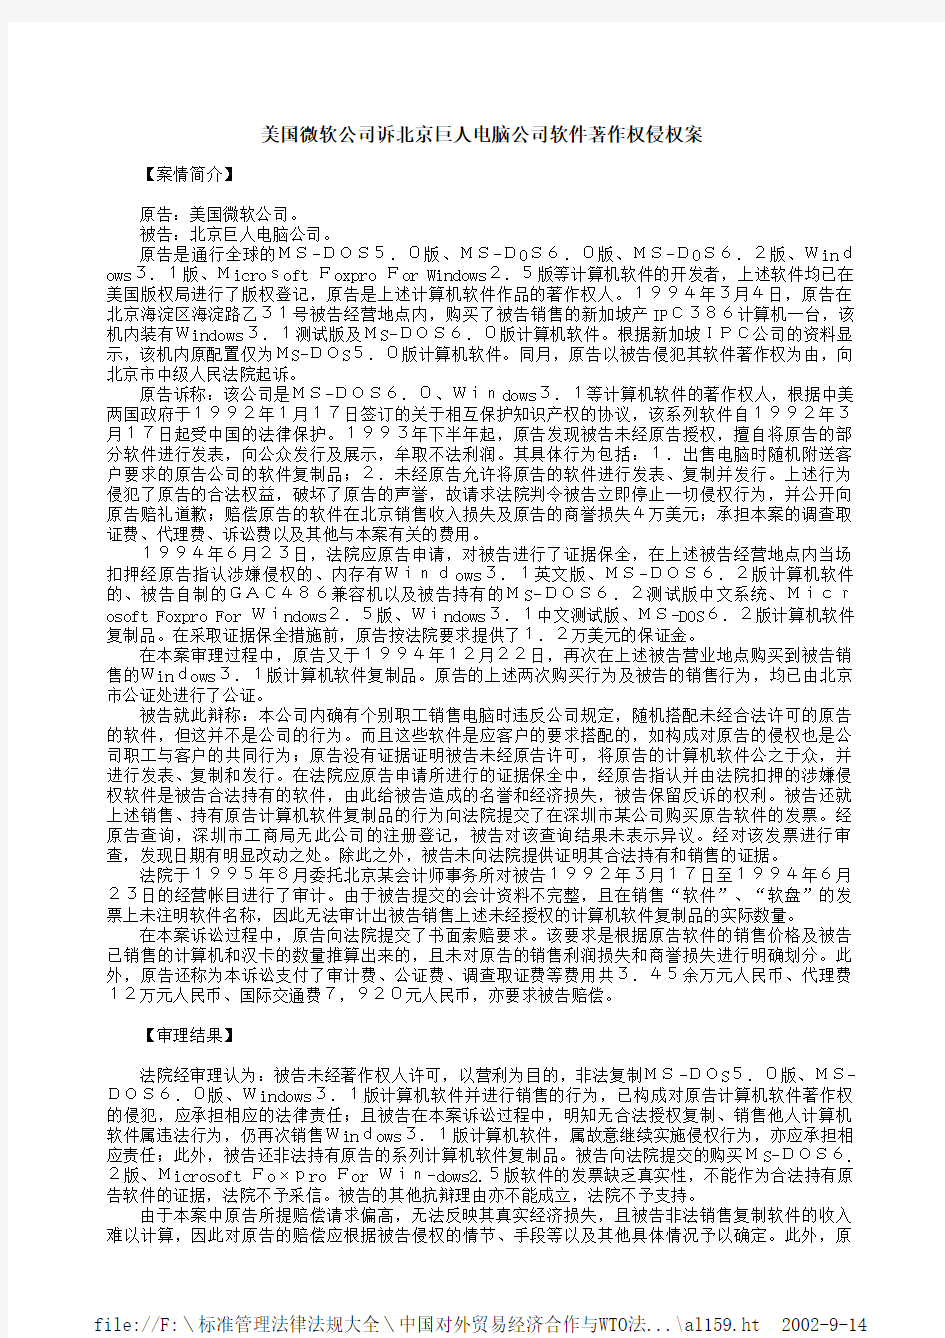 美国微软公司诉北京巨人电脑公司软件著作权侵权案